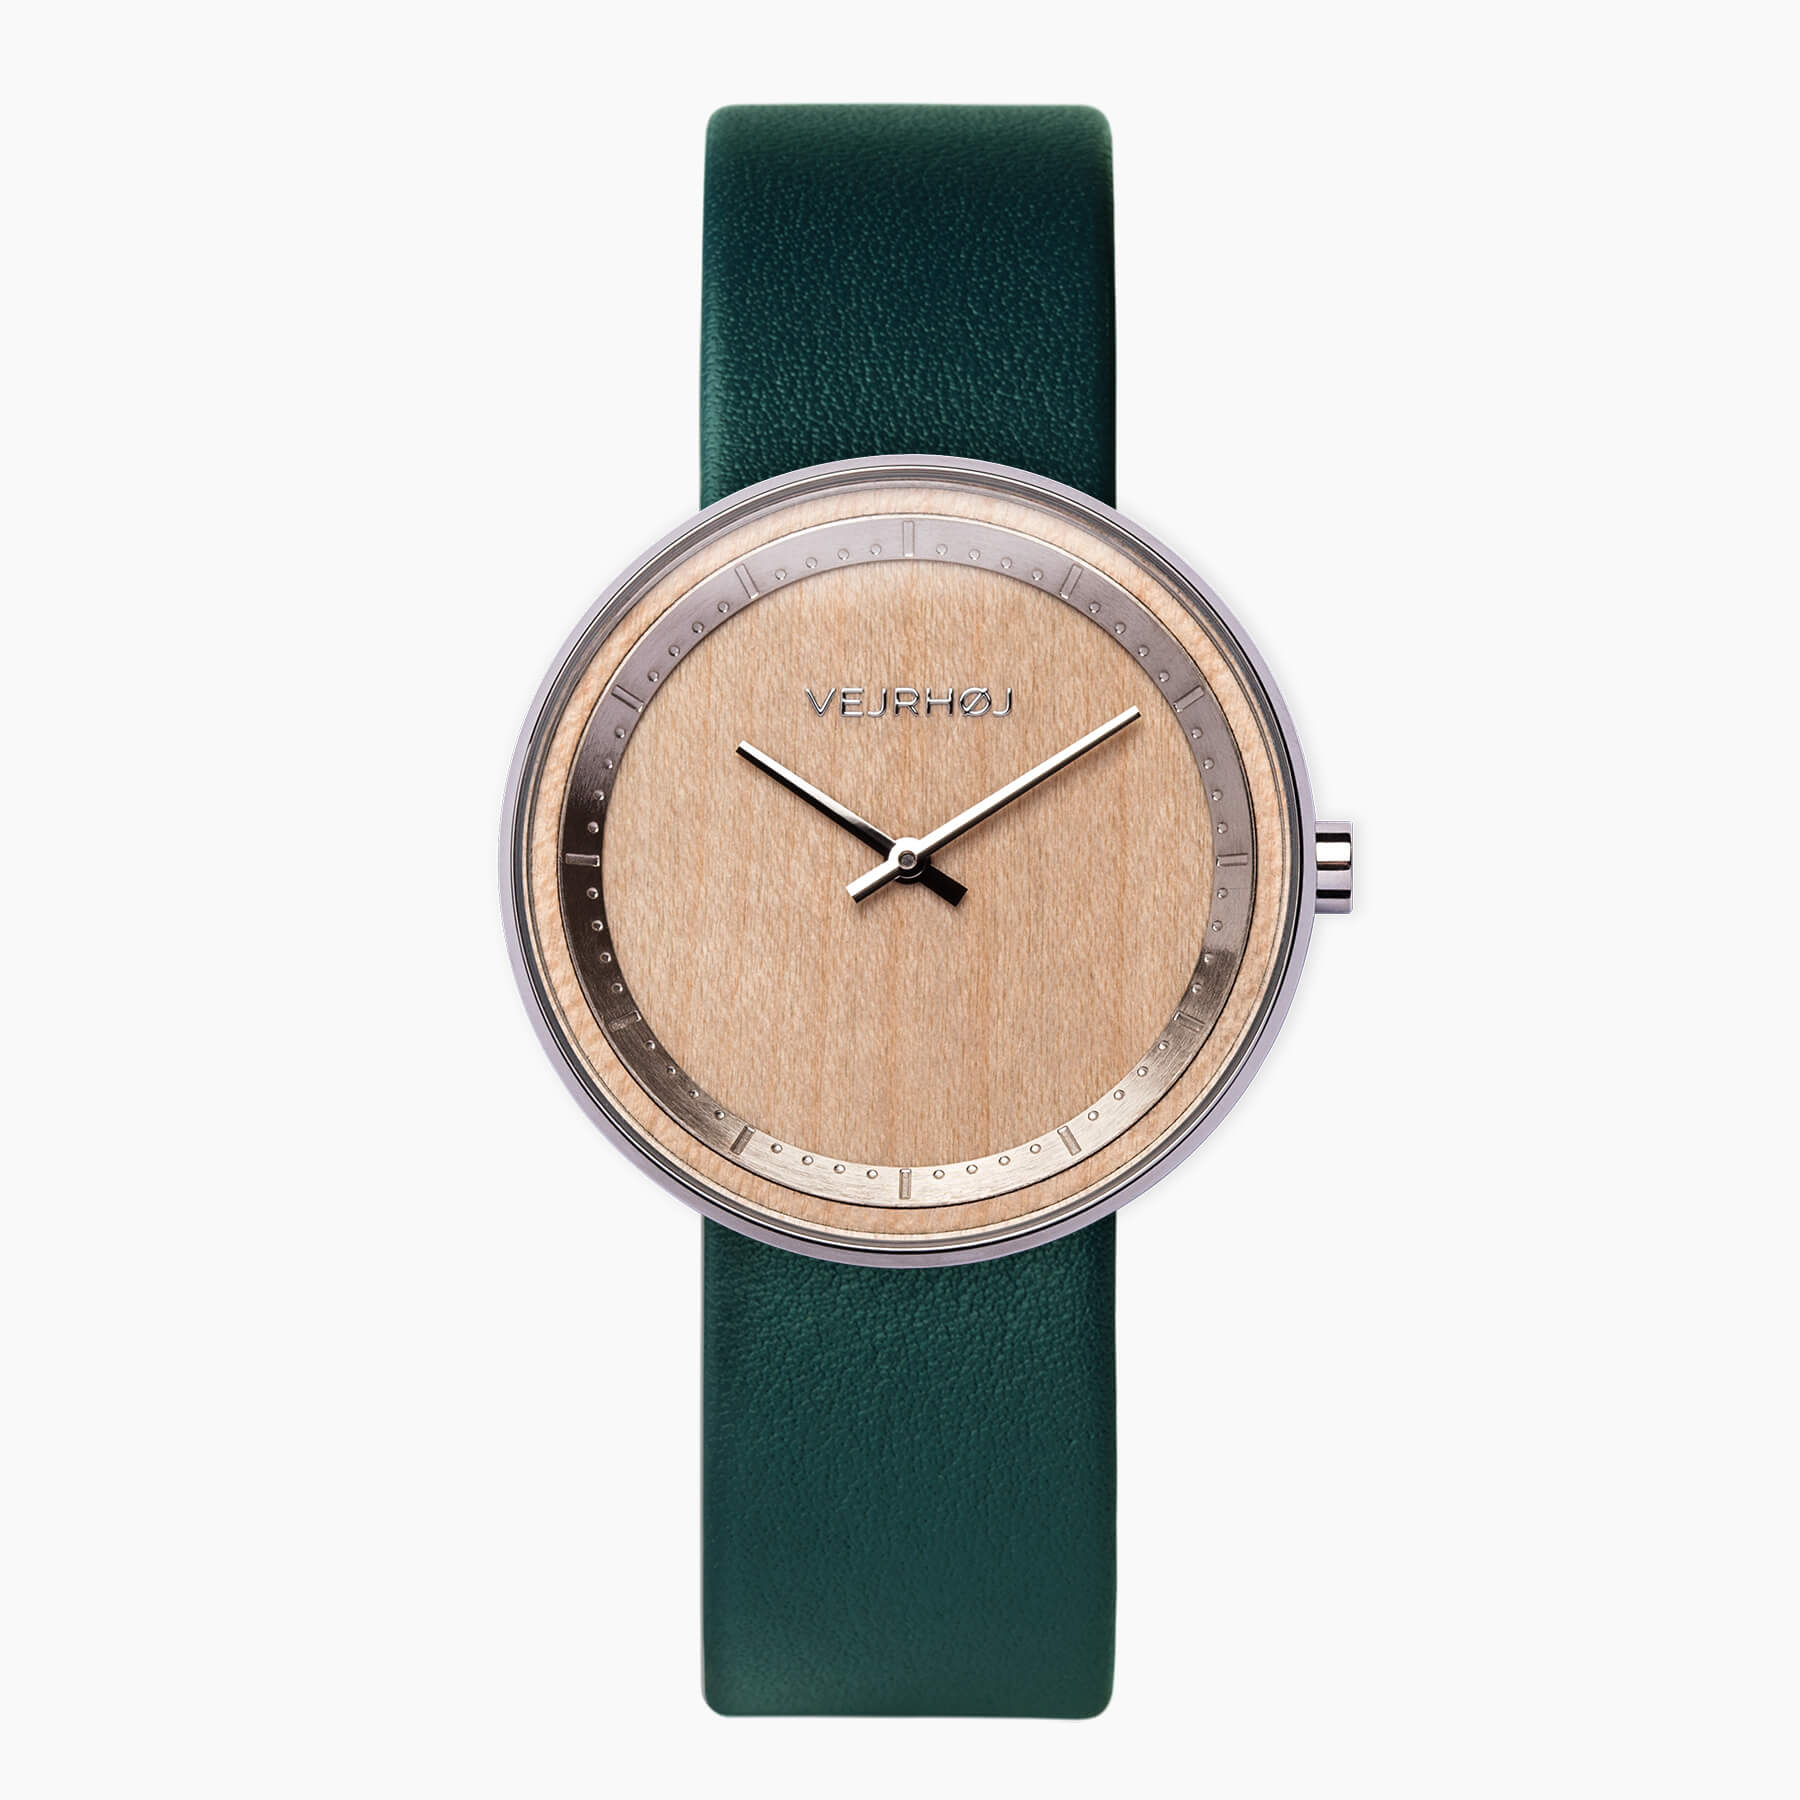 グリーンなストラップのついたメイプル材とシルバーを融合した腕時計